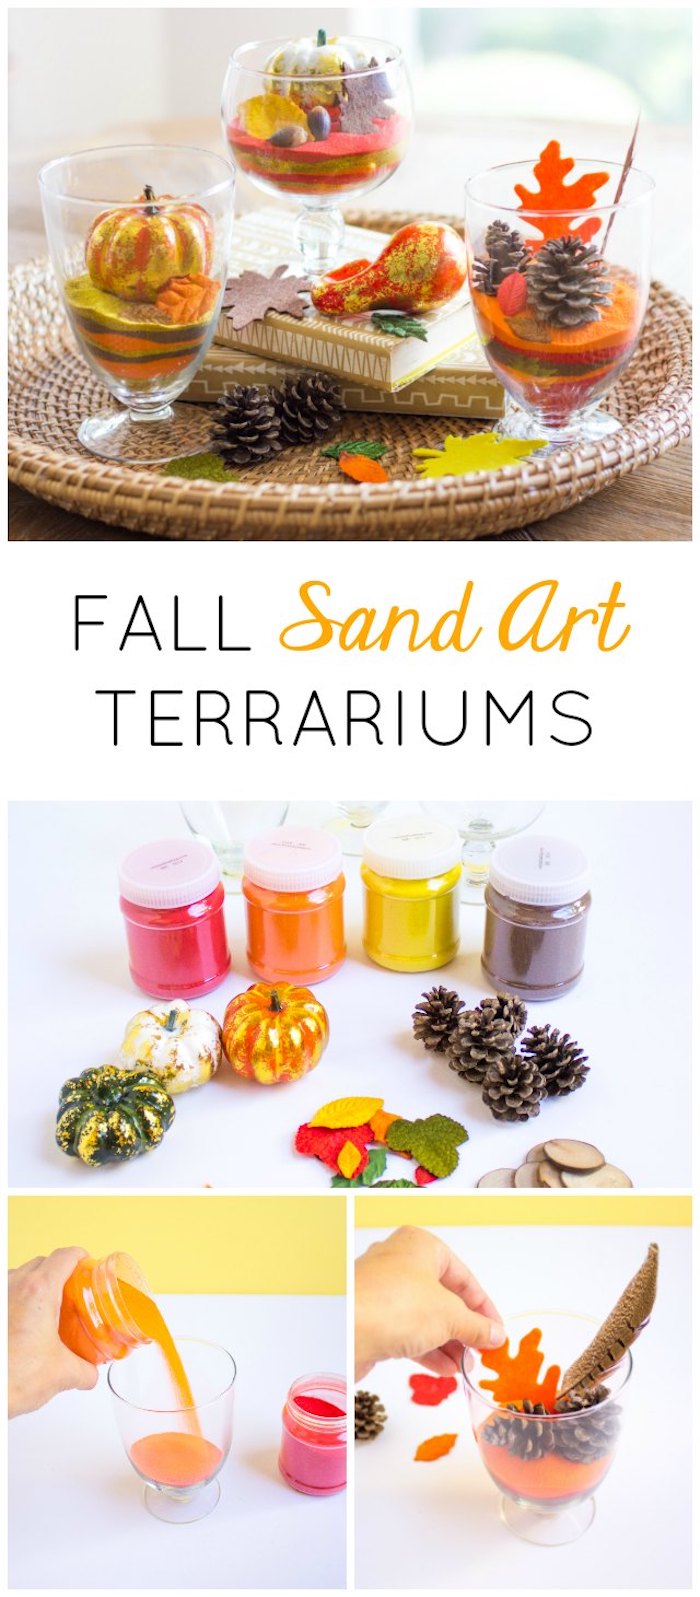 idée comment faire un terrarium plante en sable coloré , pommes de pins, mini citrouilles et feuilles mortes artificielles, deco automne a faire soi meme